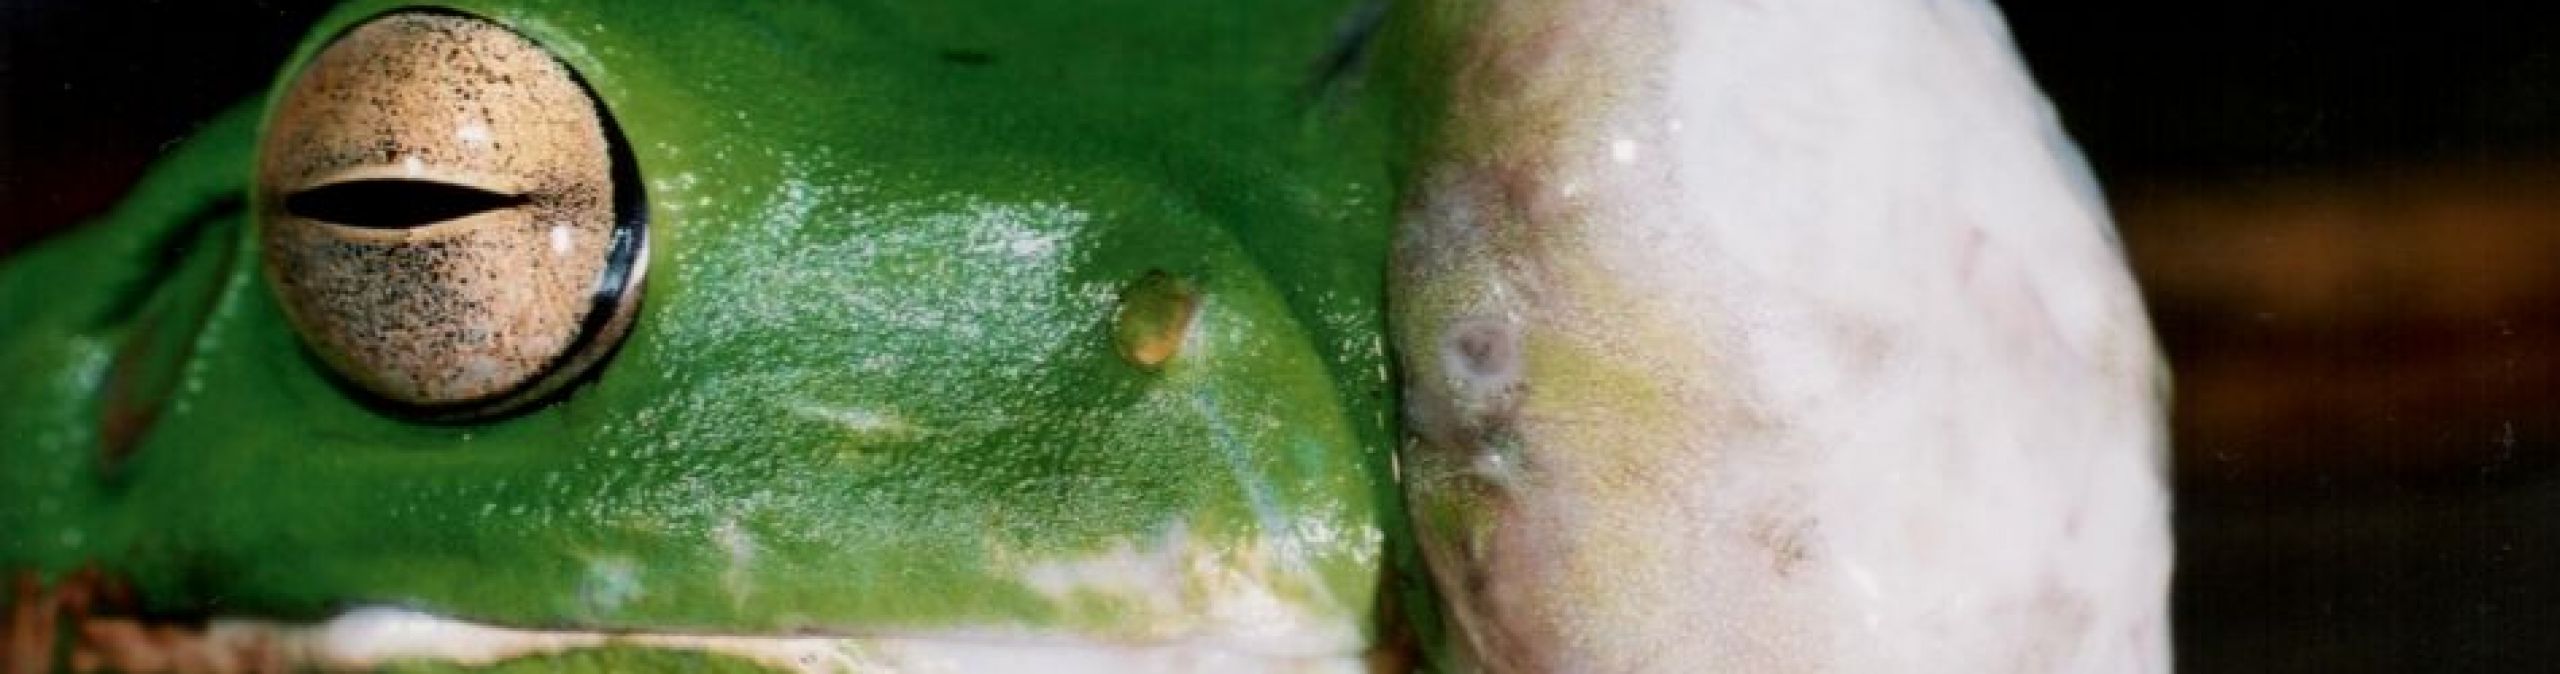 White-lipped treefrog withsquamous cell carcinoma
Photographer: Deborah Pergolotti